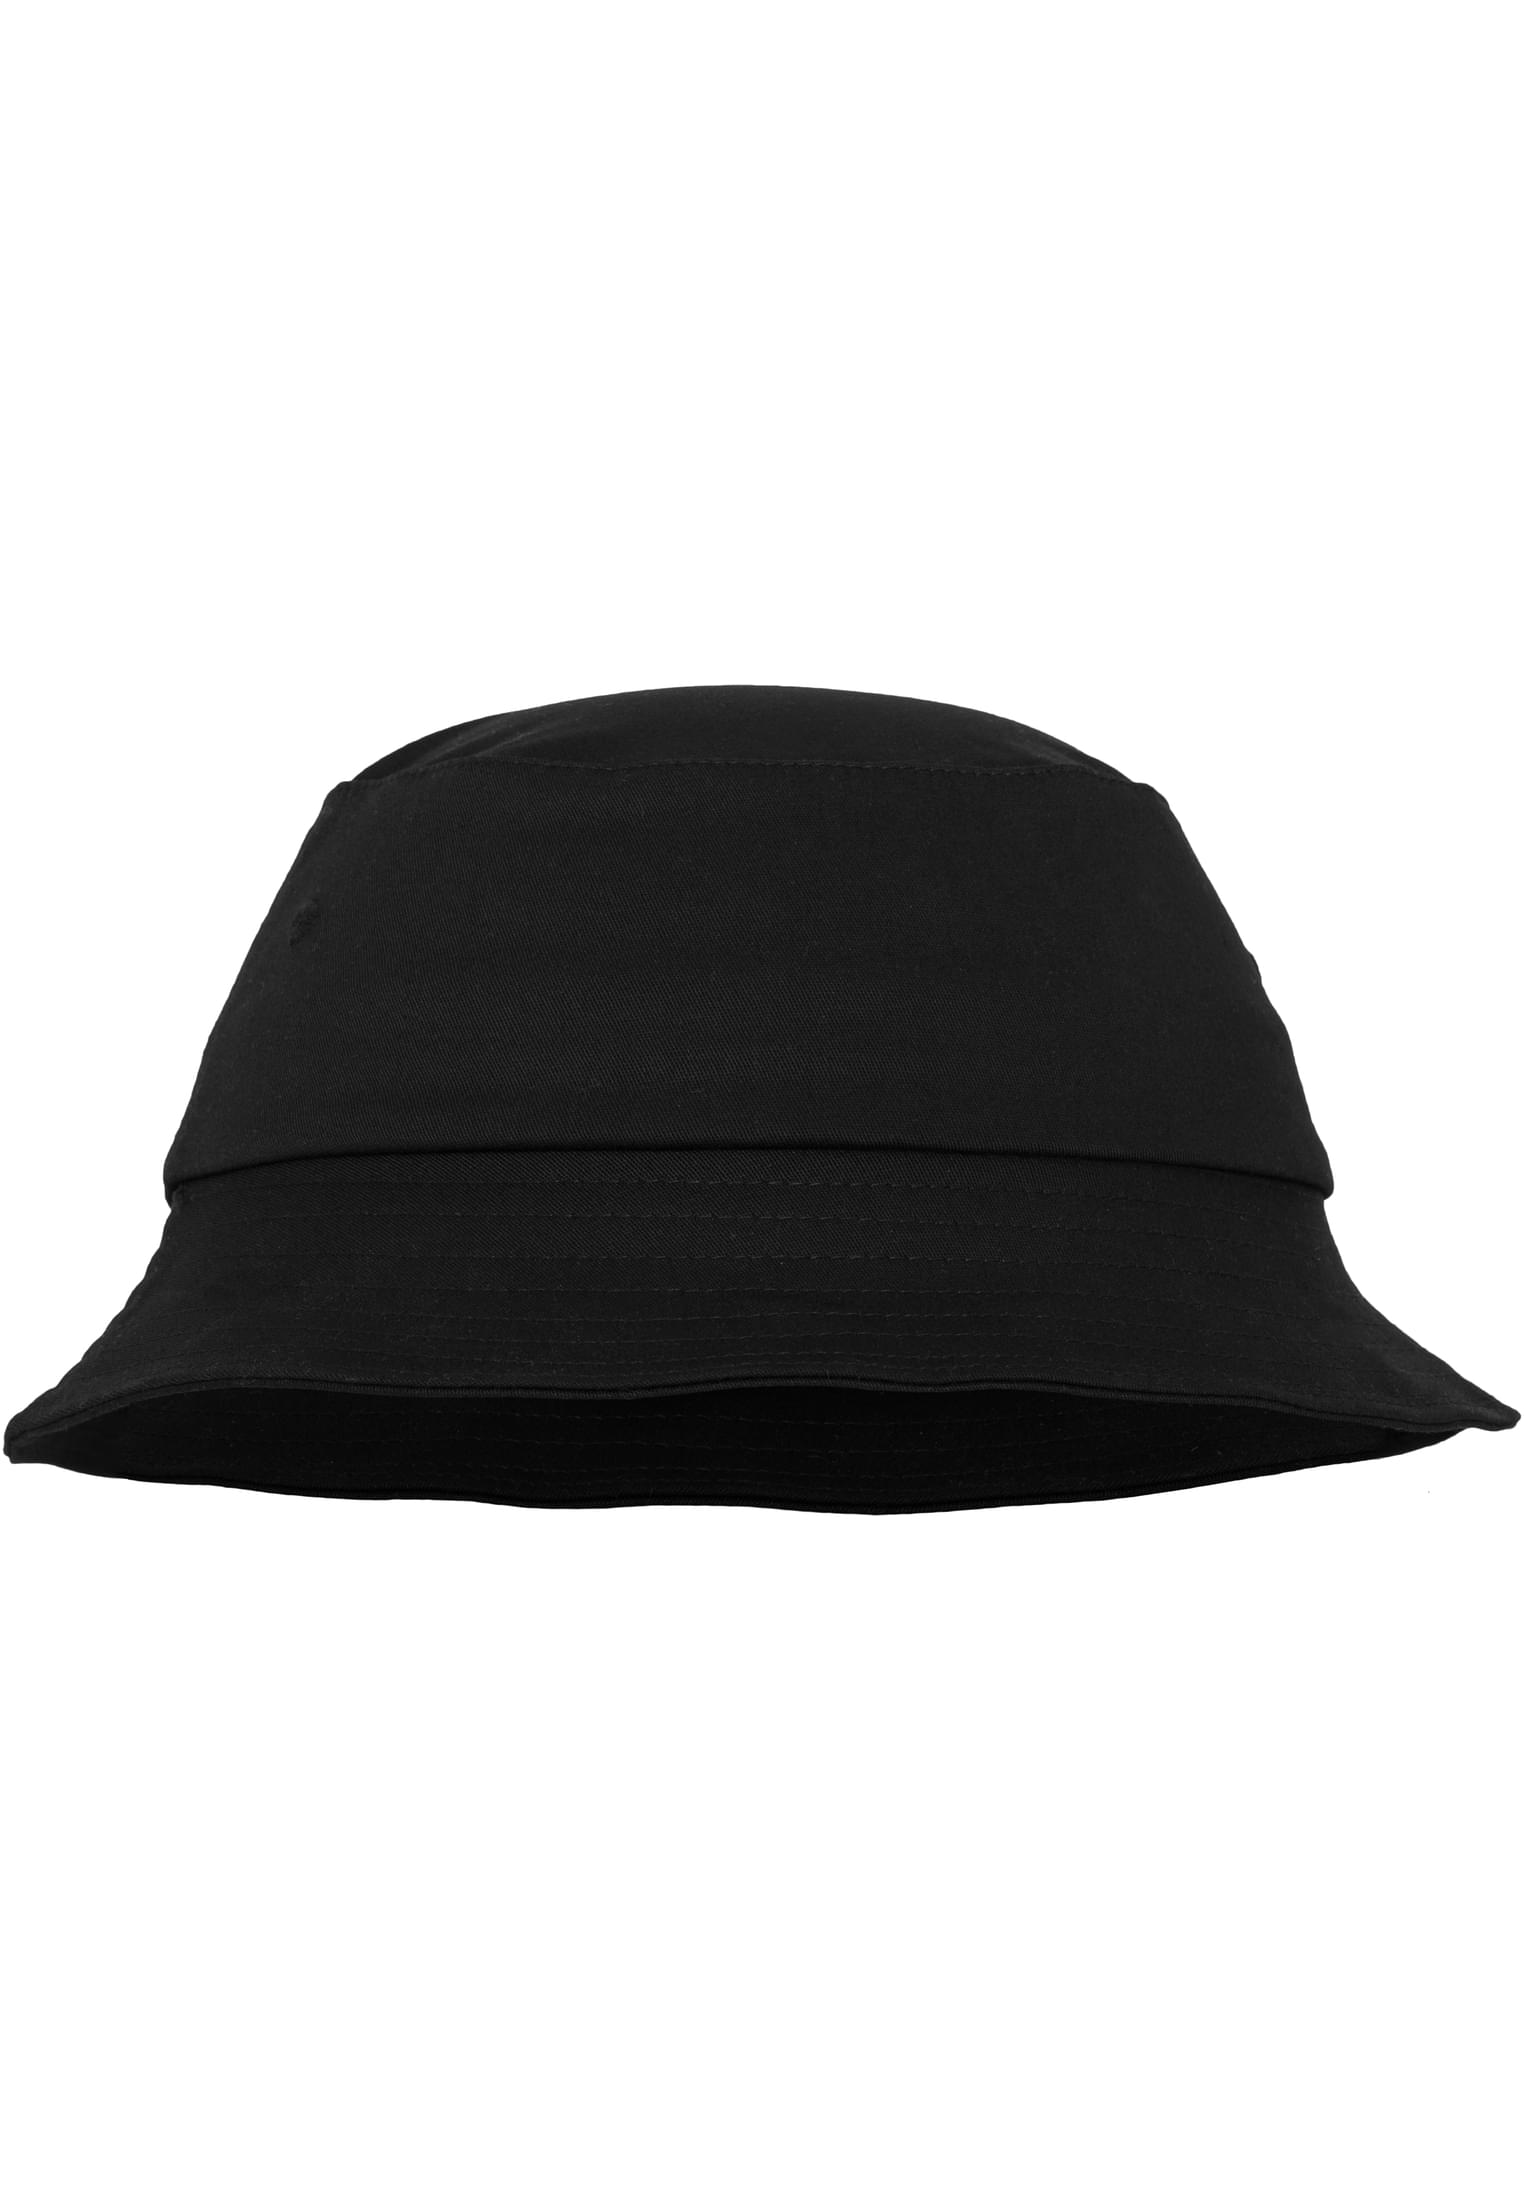 Flexfit Twill Cotton Hat-5003 Bucket